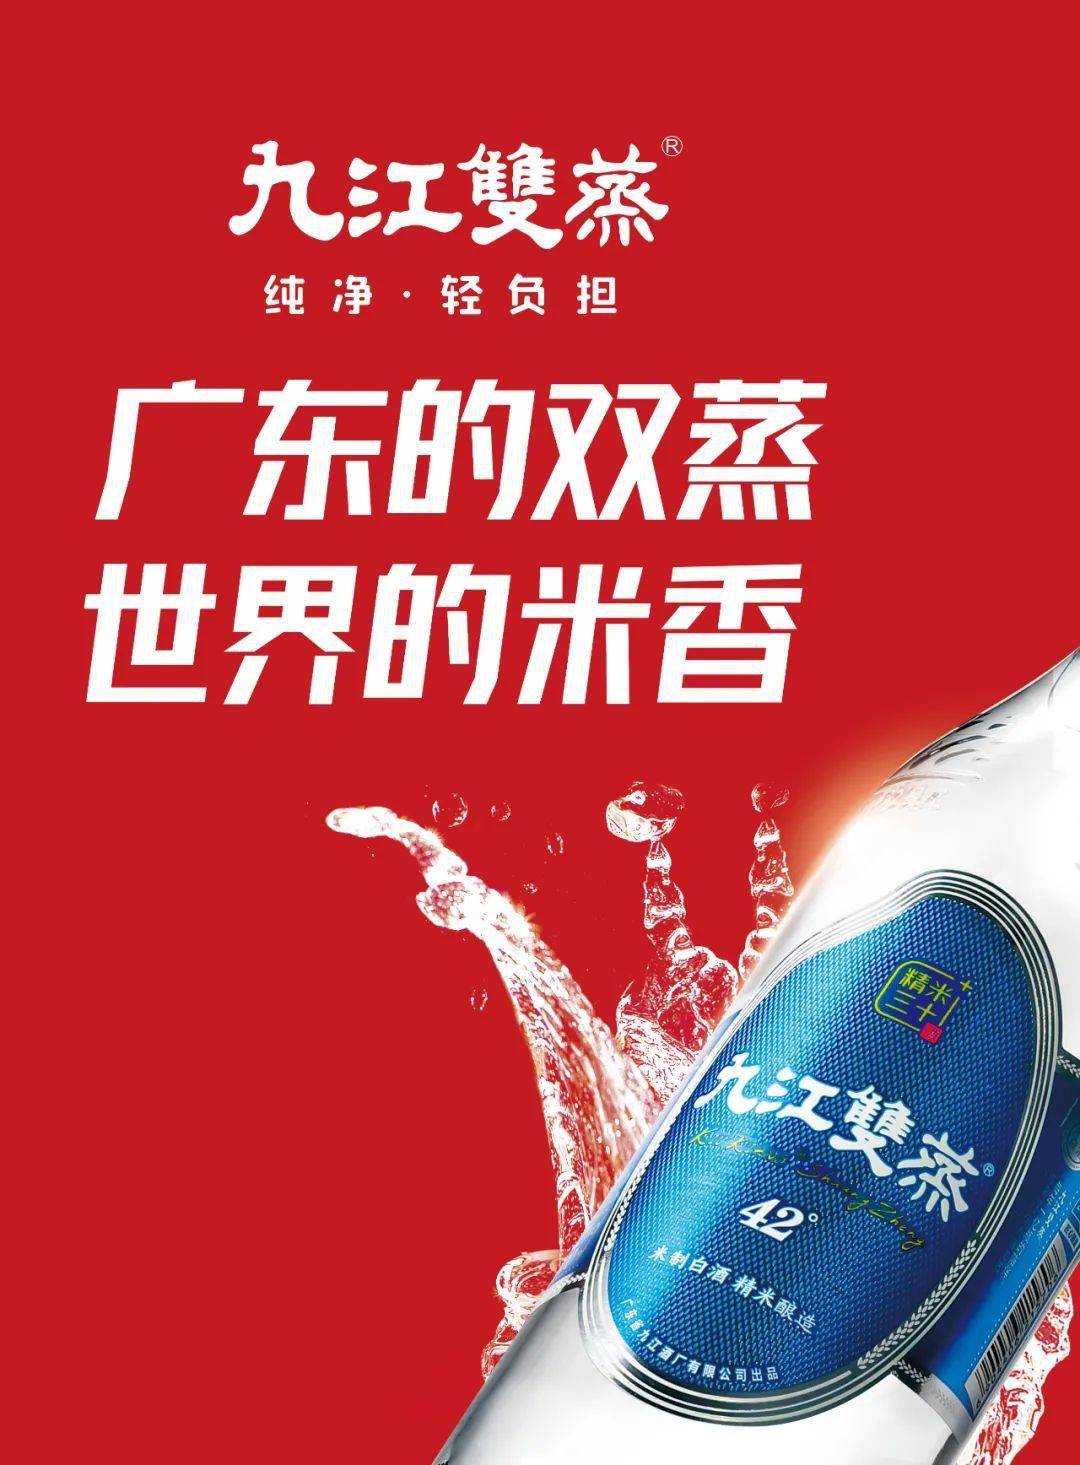 九江双蒸酒广告图片图片